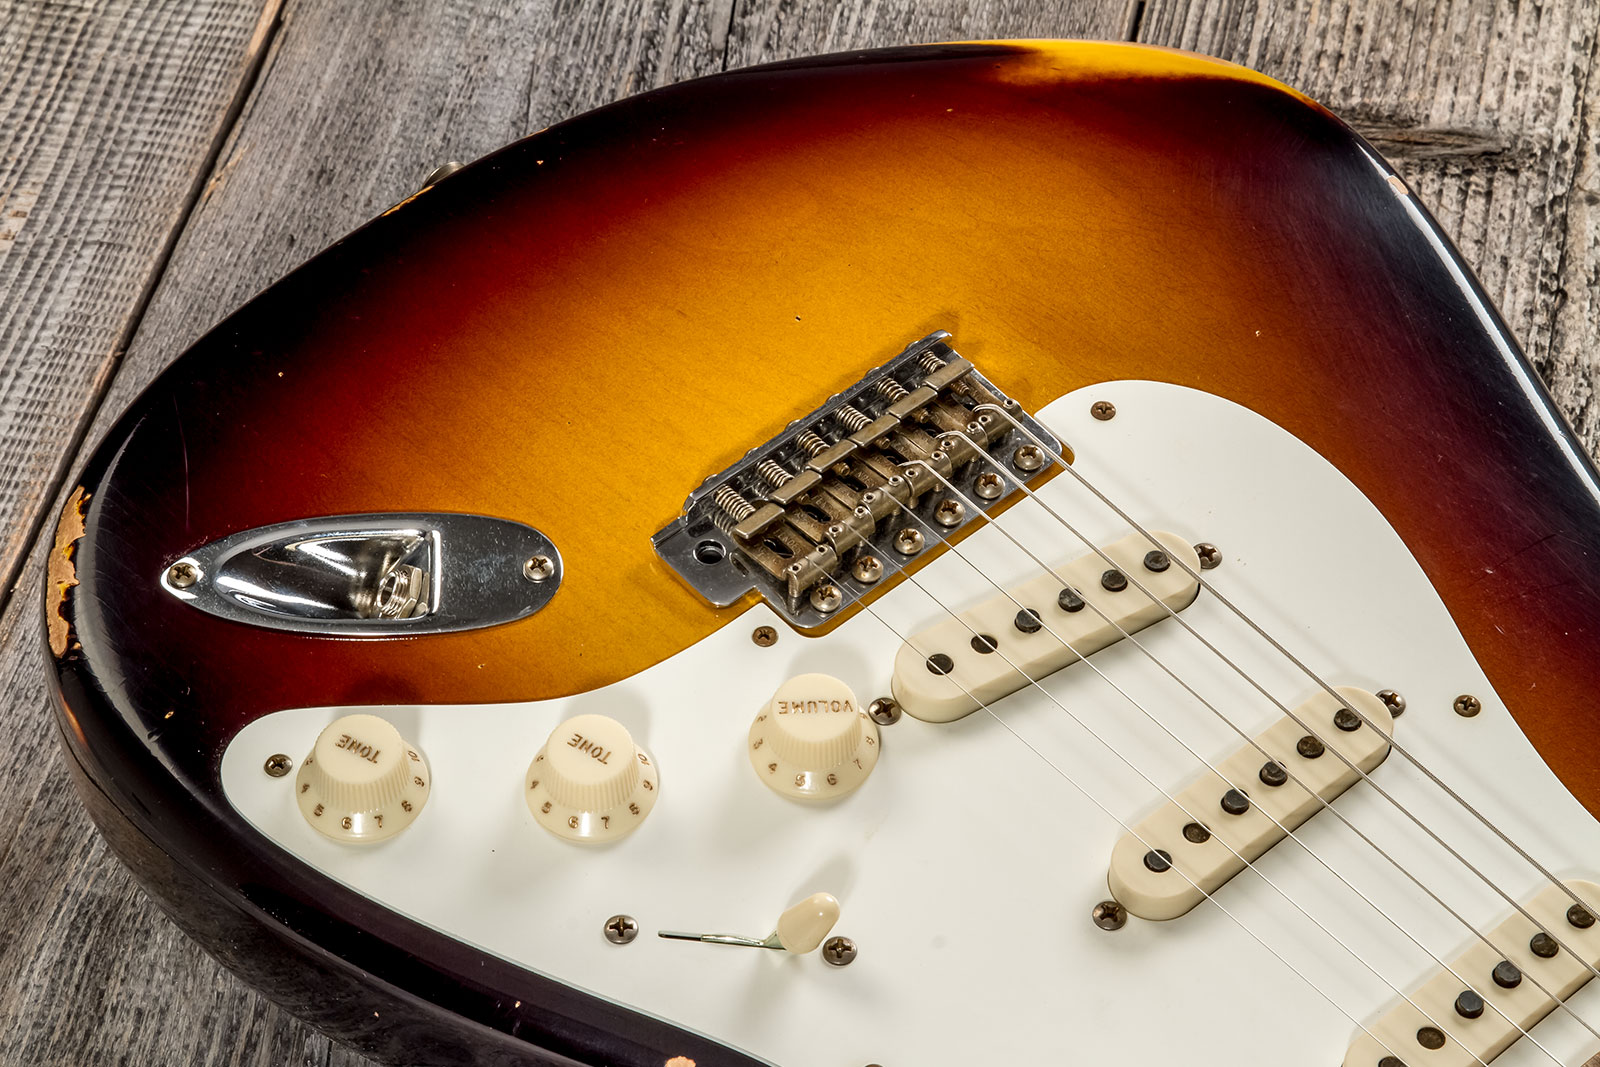 Fender Custom Shop Strat 1957 3s Trem Mn #cz575421 - Relic 2-color Sunburst - E-Gitarre in Str-Form - Variation 3